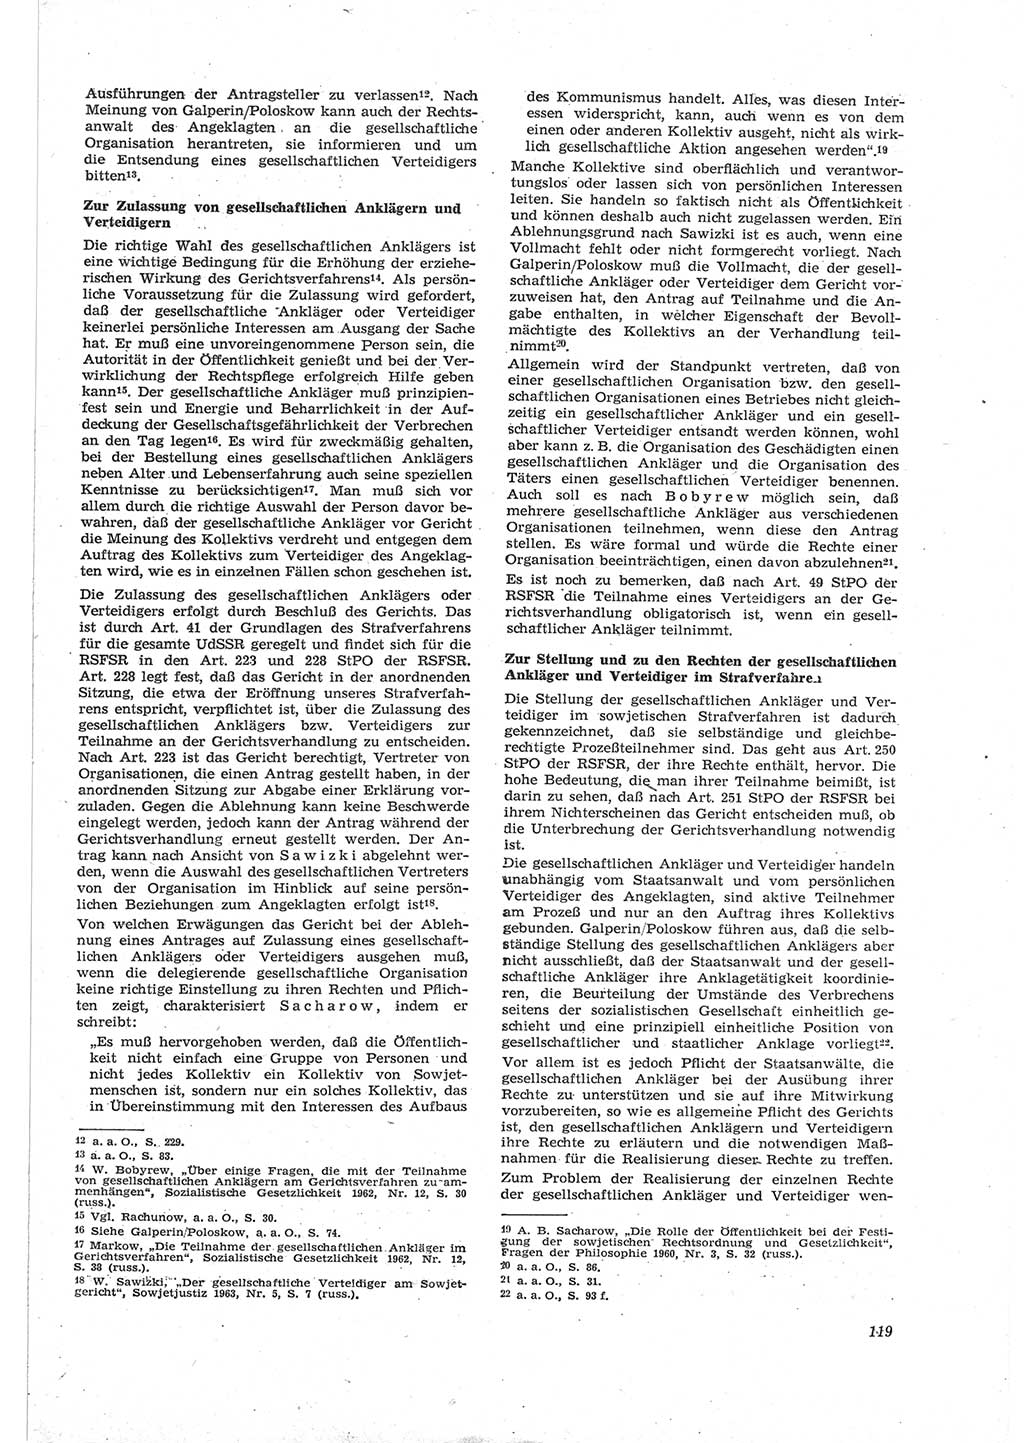 Neue Justiz (NJ), Zeitschrift für Recht und Rechtswissenschaft [Deutsche Demokratische Republik (DDR)], 18. Jahrgang 1964, Seite 119 (NJ DDR 1964, S. 119)